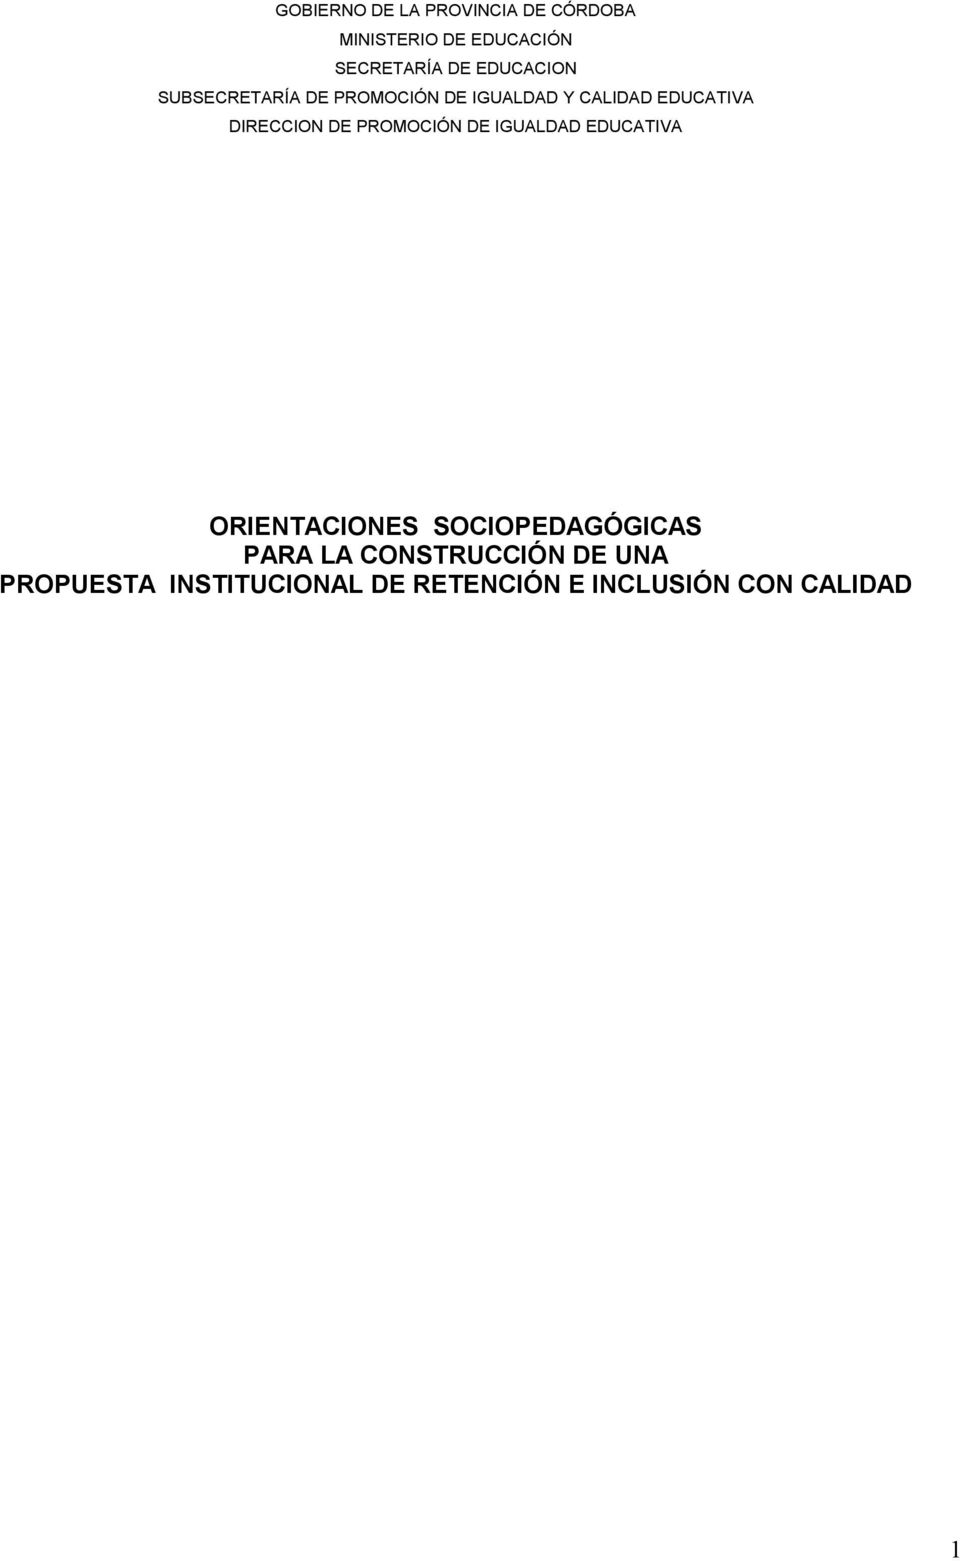 DIRECCION DE PROMOCIÓN DE IGUALDAD EDUCATIVA ORIENTACIONES SOCIOPEDAGÓGICAS